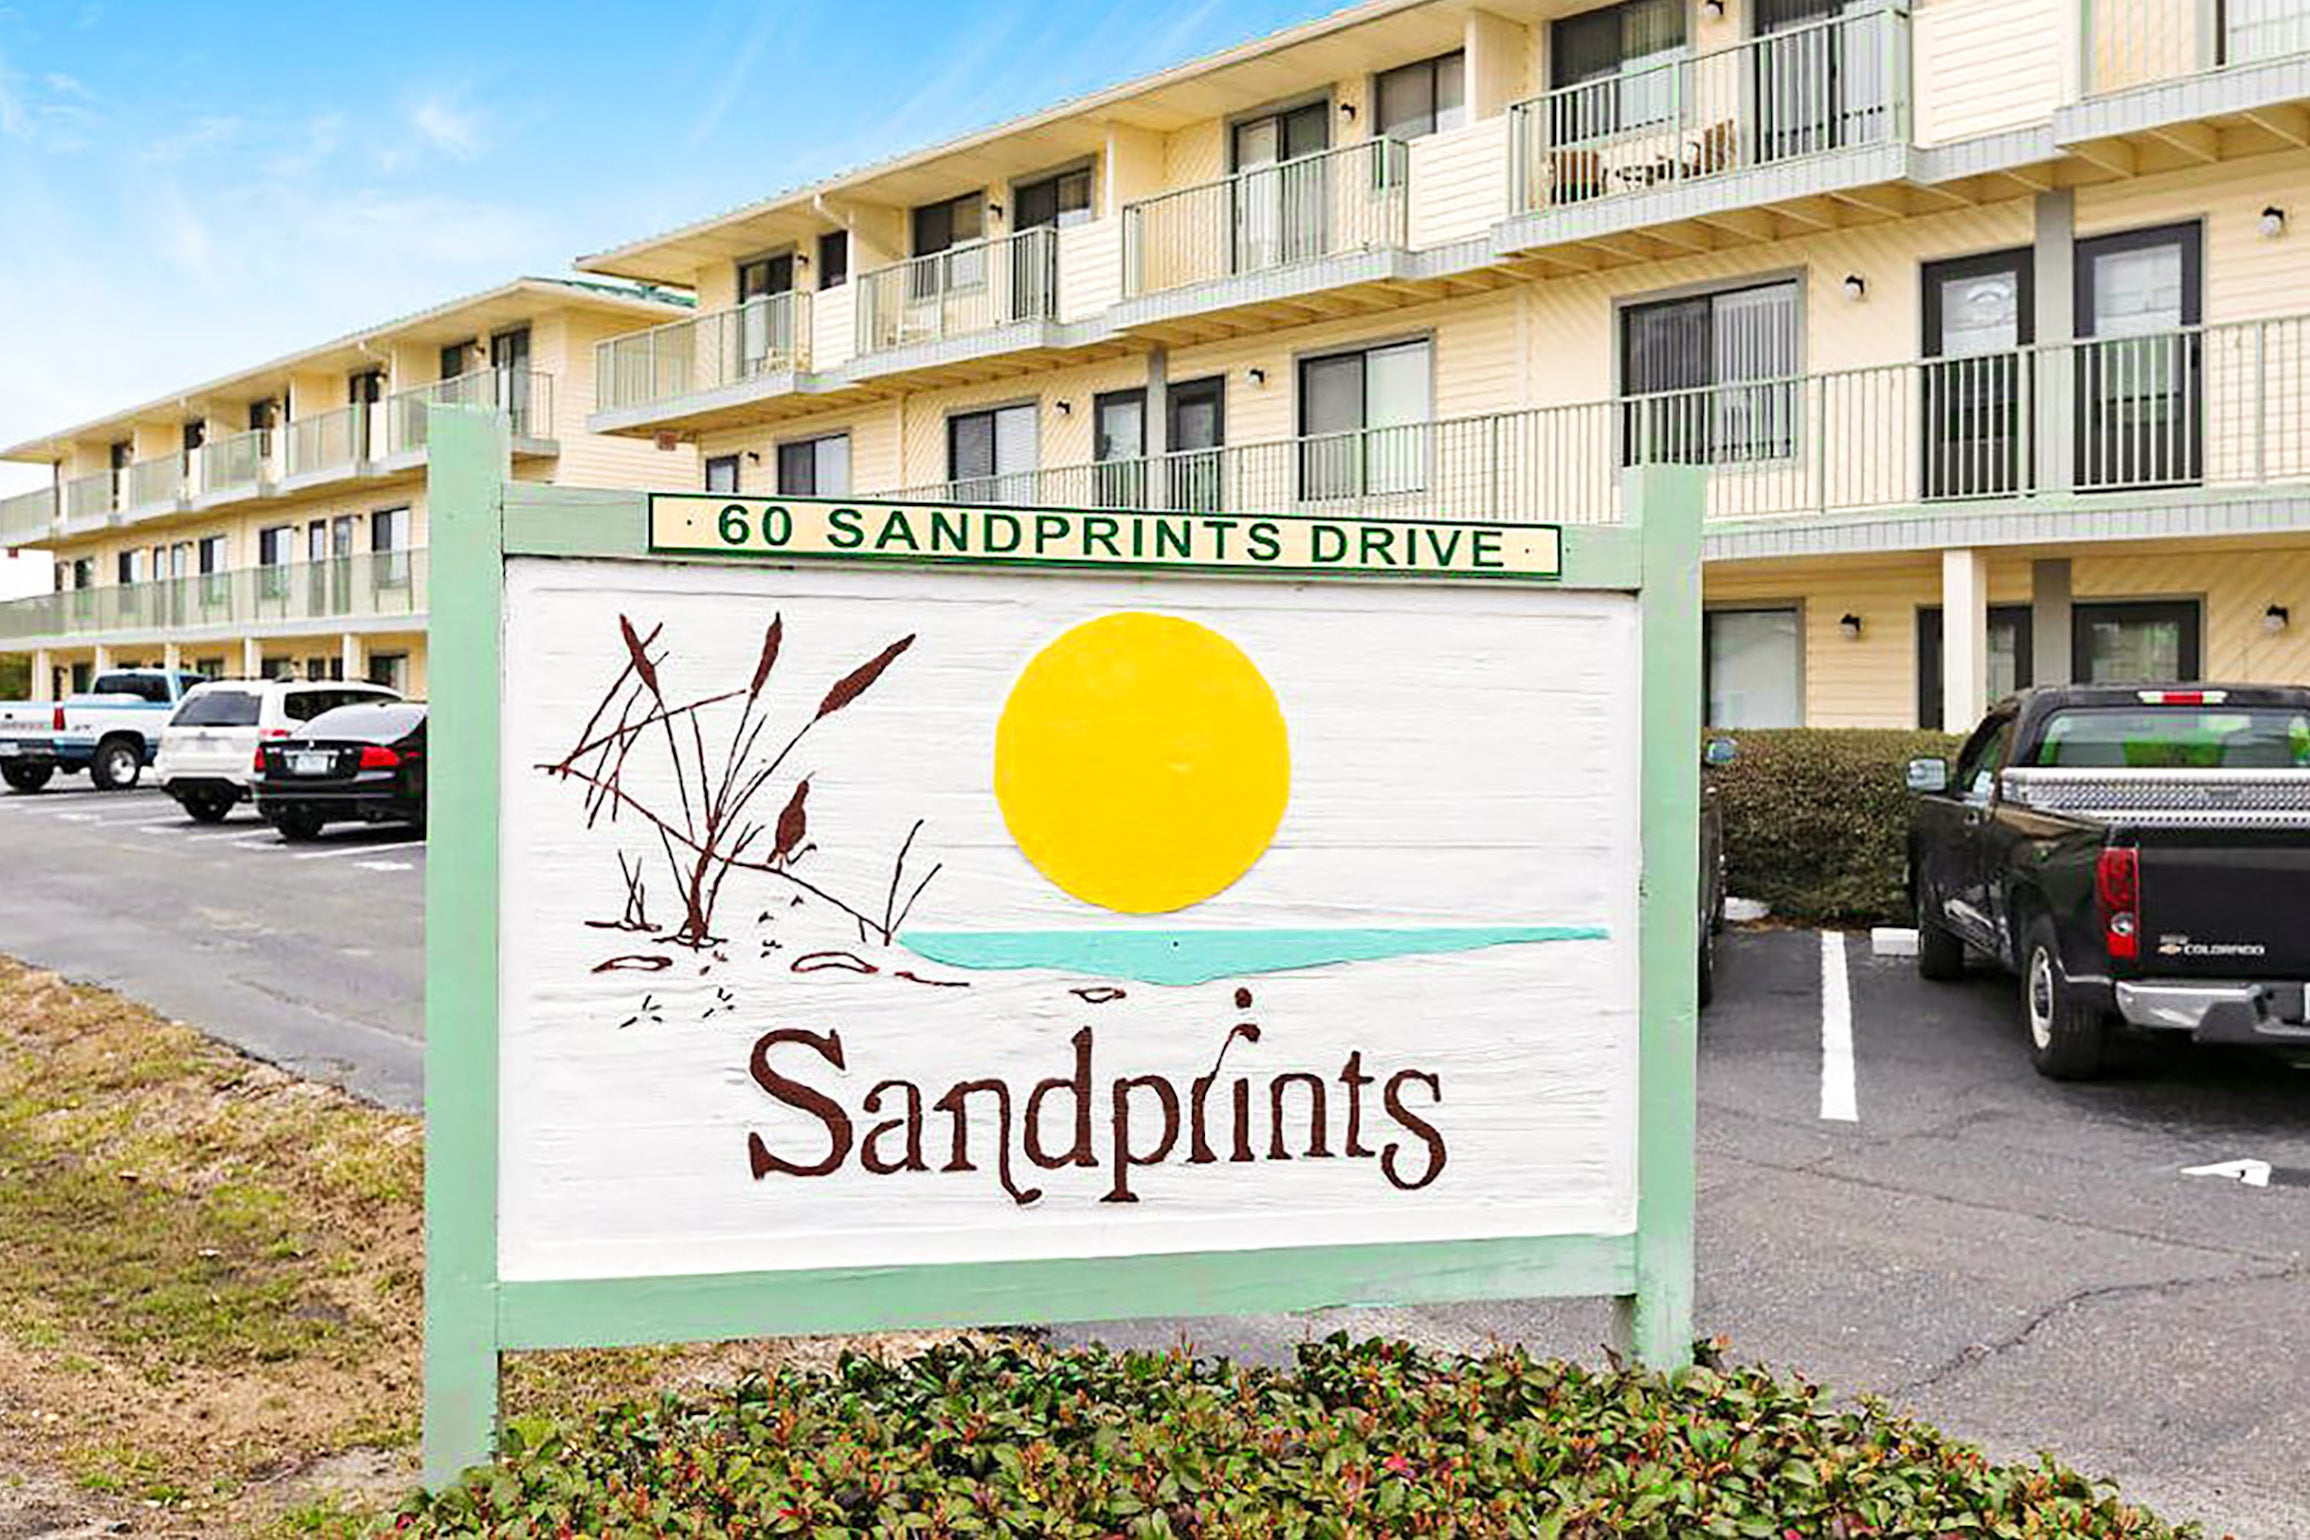 Sandprints property